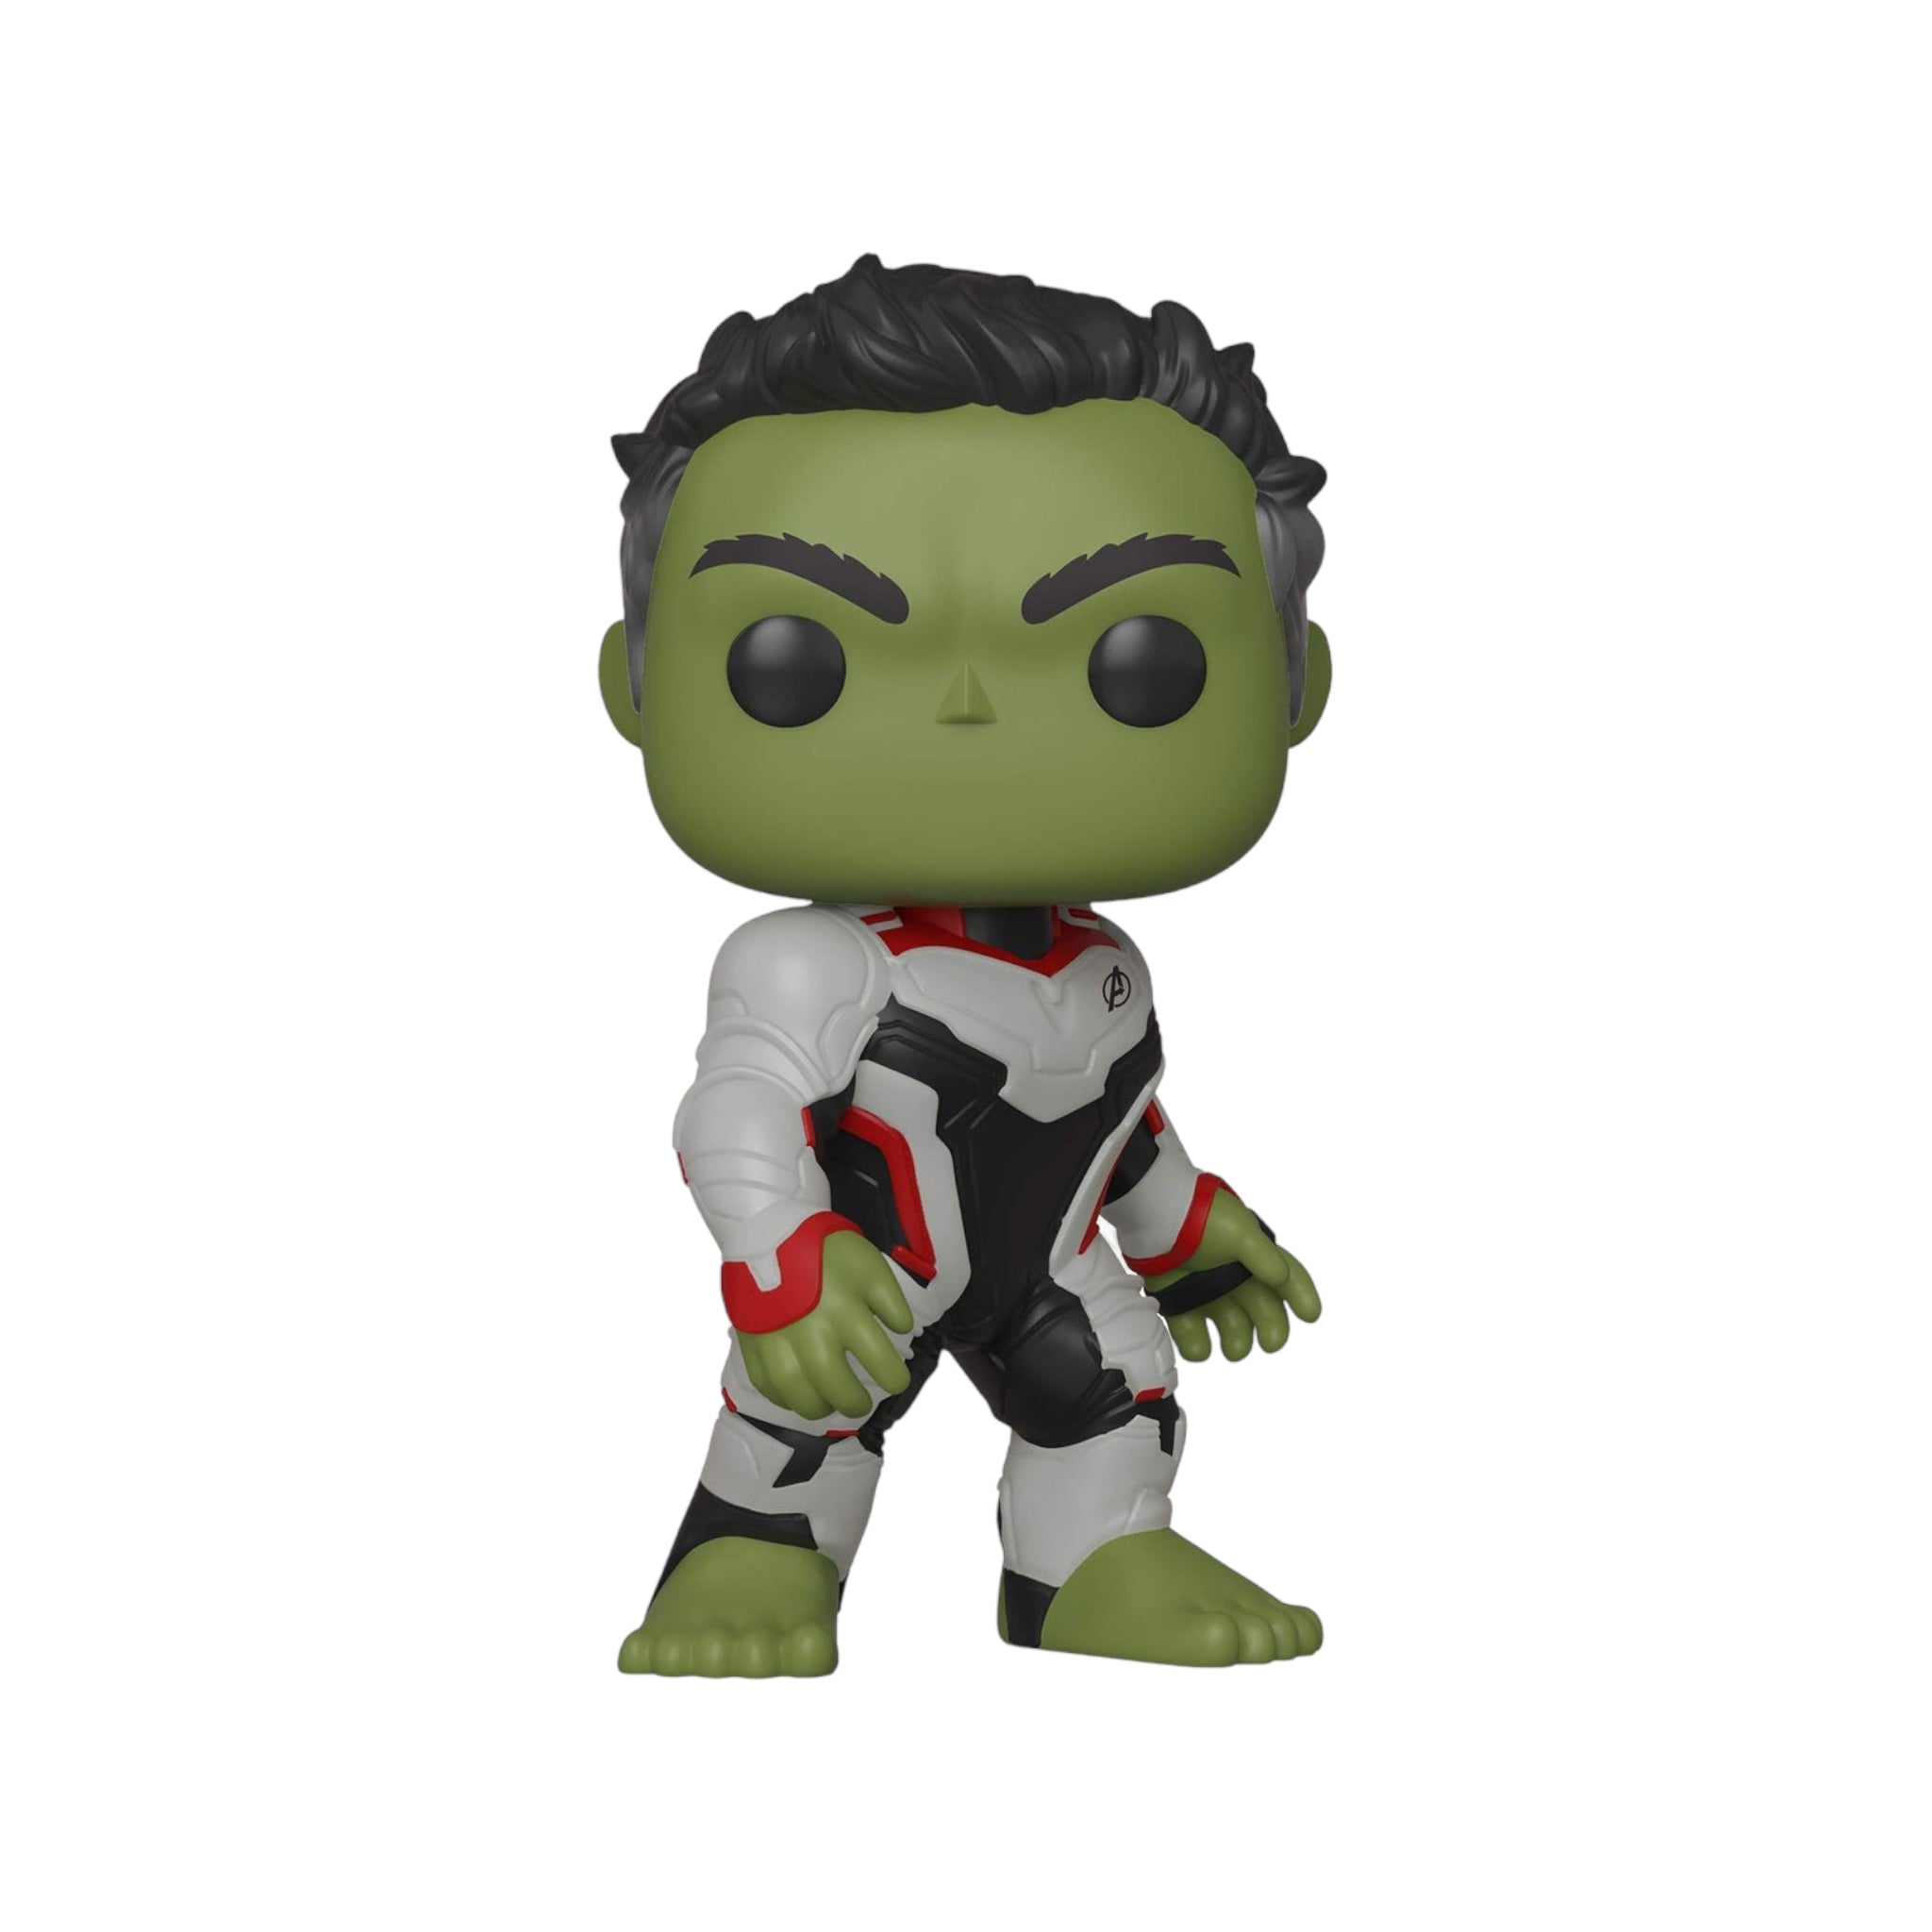 Hulk #451 Funko Pop! - Avengers: Endgame